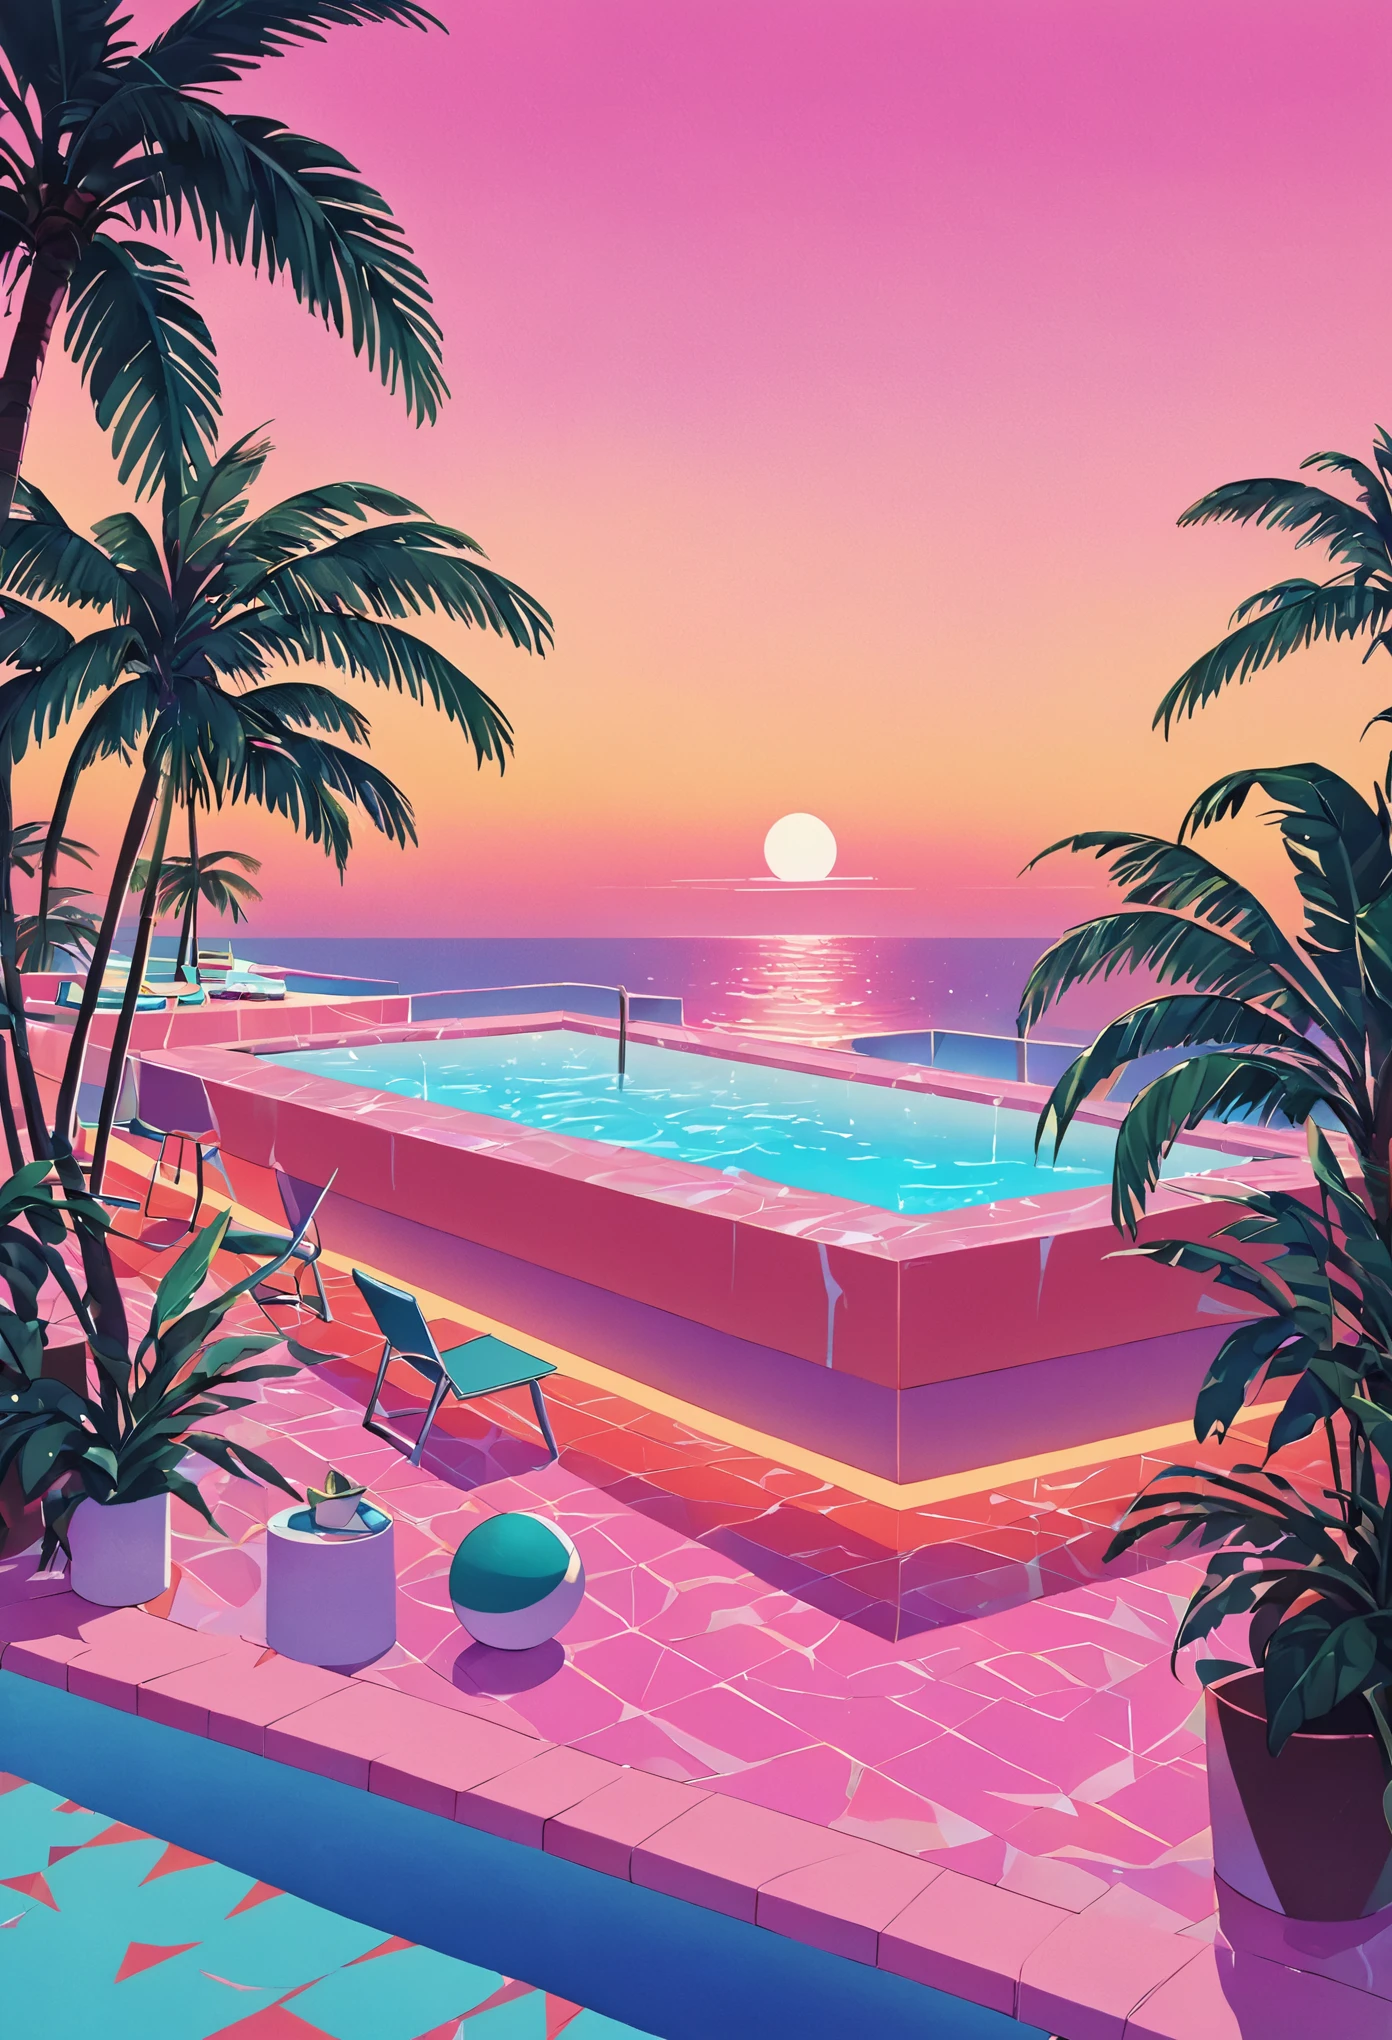 想像一件深深沉浸在 80 年代蒸氣波美學中的藝術品, 靈感來自本田洋子充滿活力的風格. 想像日落時復古未來派的泳池和海灘場景, 天空閃耀著 80 年代夏季日落的溫暖色調——深橙色, 粉紅色, 以及反射在平靜的海和泳池水面上的紅色. 泳池周圍, 霓虹燈照射下的棕櫚樹和椰子樹輕輕搖曳, 增強熱帶和超現實的氛圍. 幾何圖案的霓虹燈照亮了場景, 為一切投射出夢幻般的光芒. 背景是一家別緻的海濱酒吧，透過大玻璃窗可以看到內部裝潢, 展示的房間擁有柔和色彩的牆壁和地板，上面覆蓋著豪華的水磨石和大理石紋理. 整體氛圍將懷舊奢華與充滿活力融為一體, 暖色调调色板, 創造了一個既永恆又明顯讓人回想起 80 年代的場景.